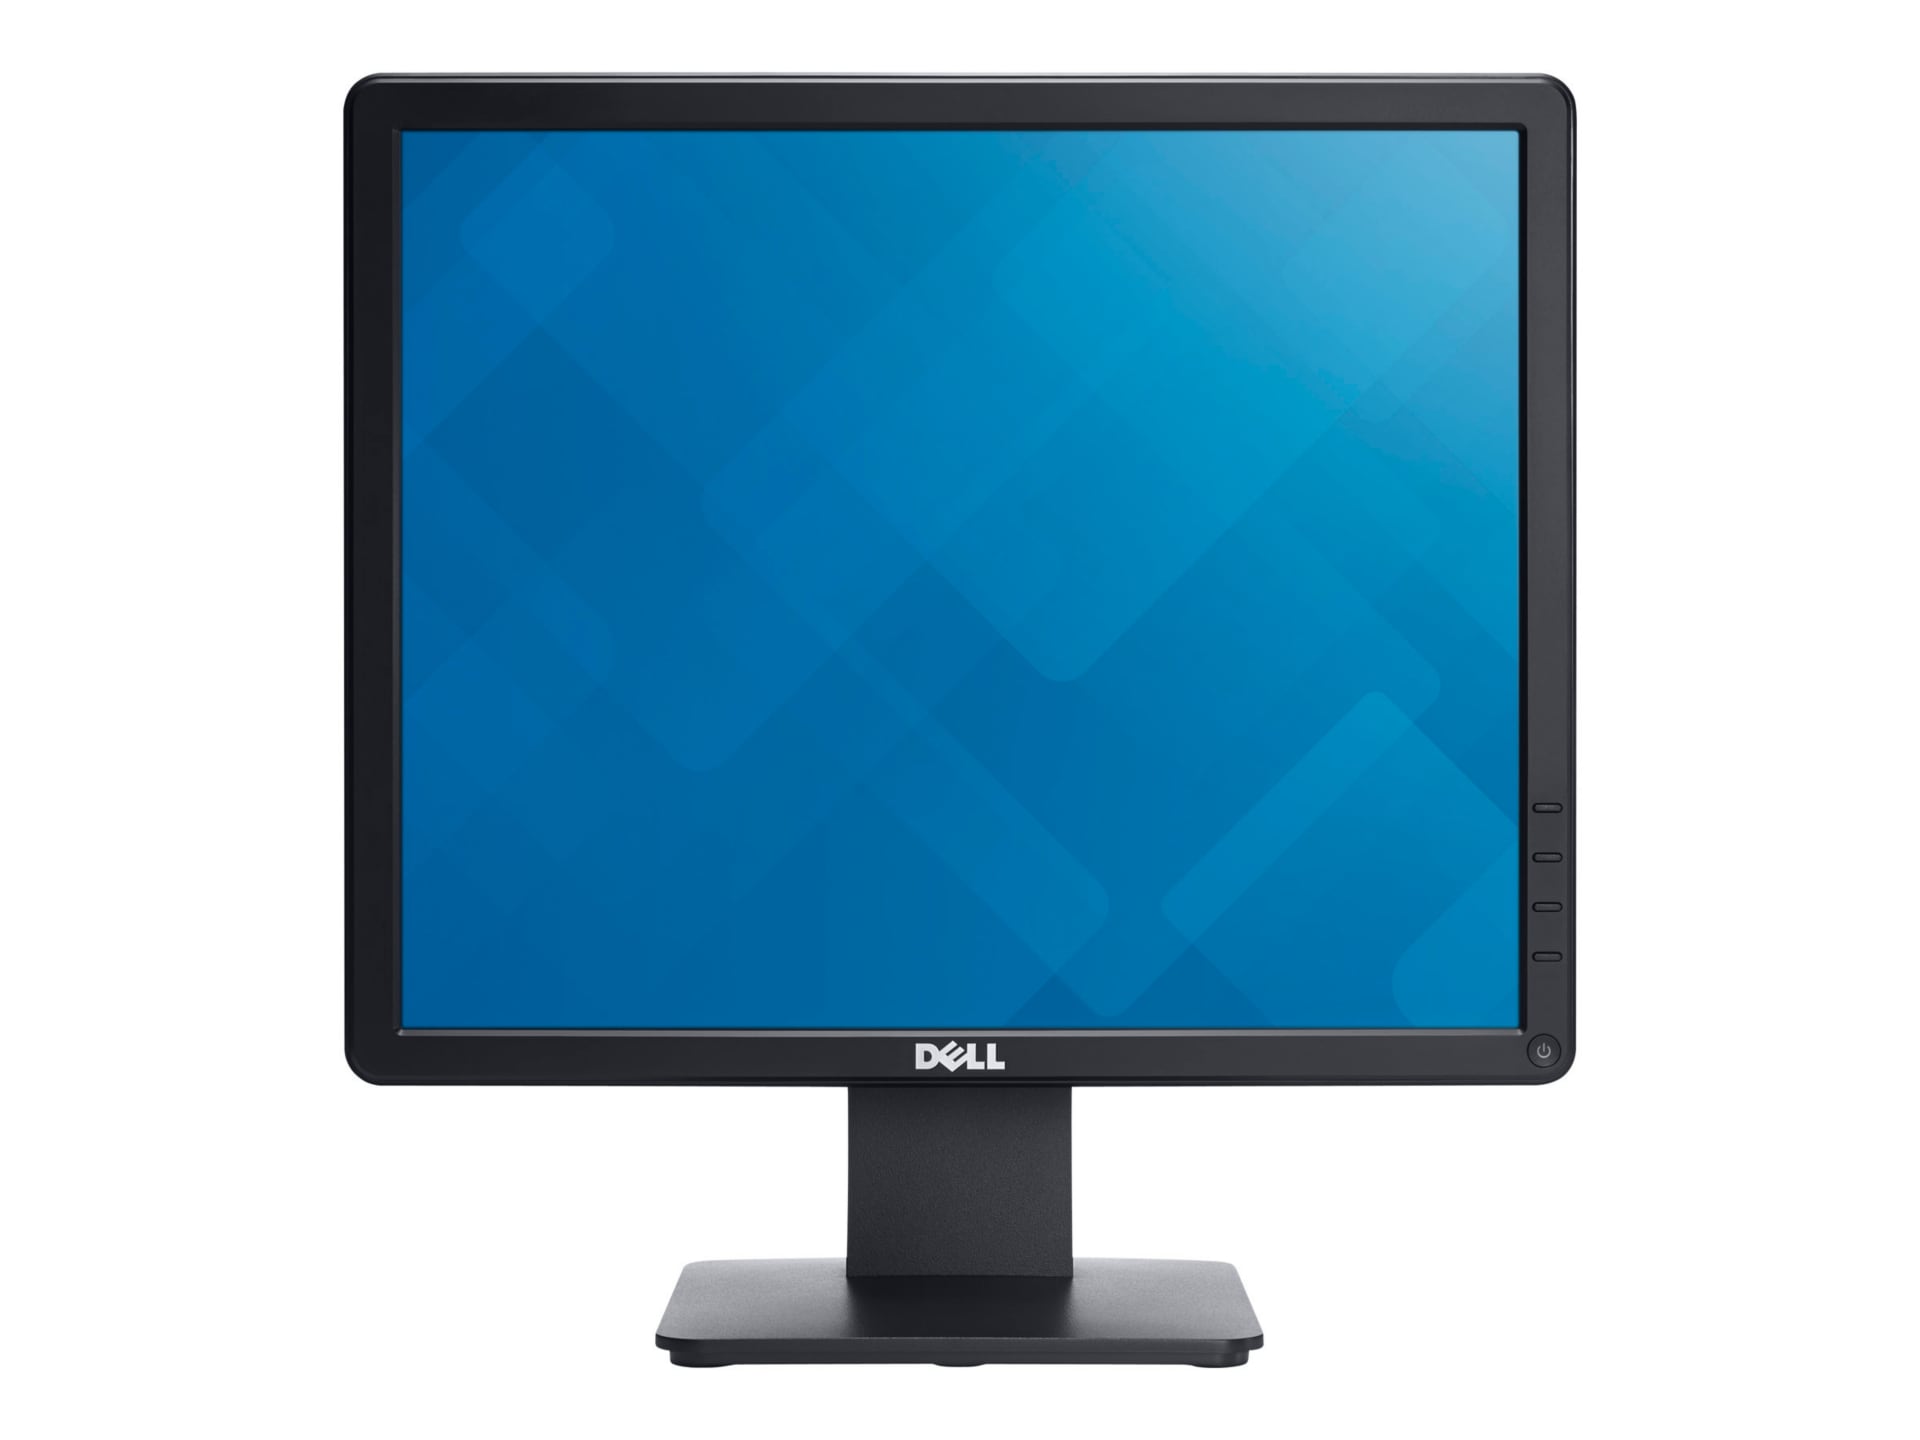 Dell 17 Monitor | E1715S